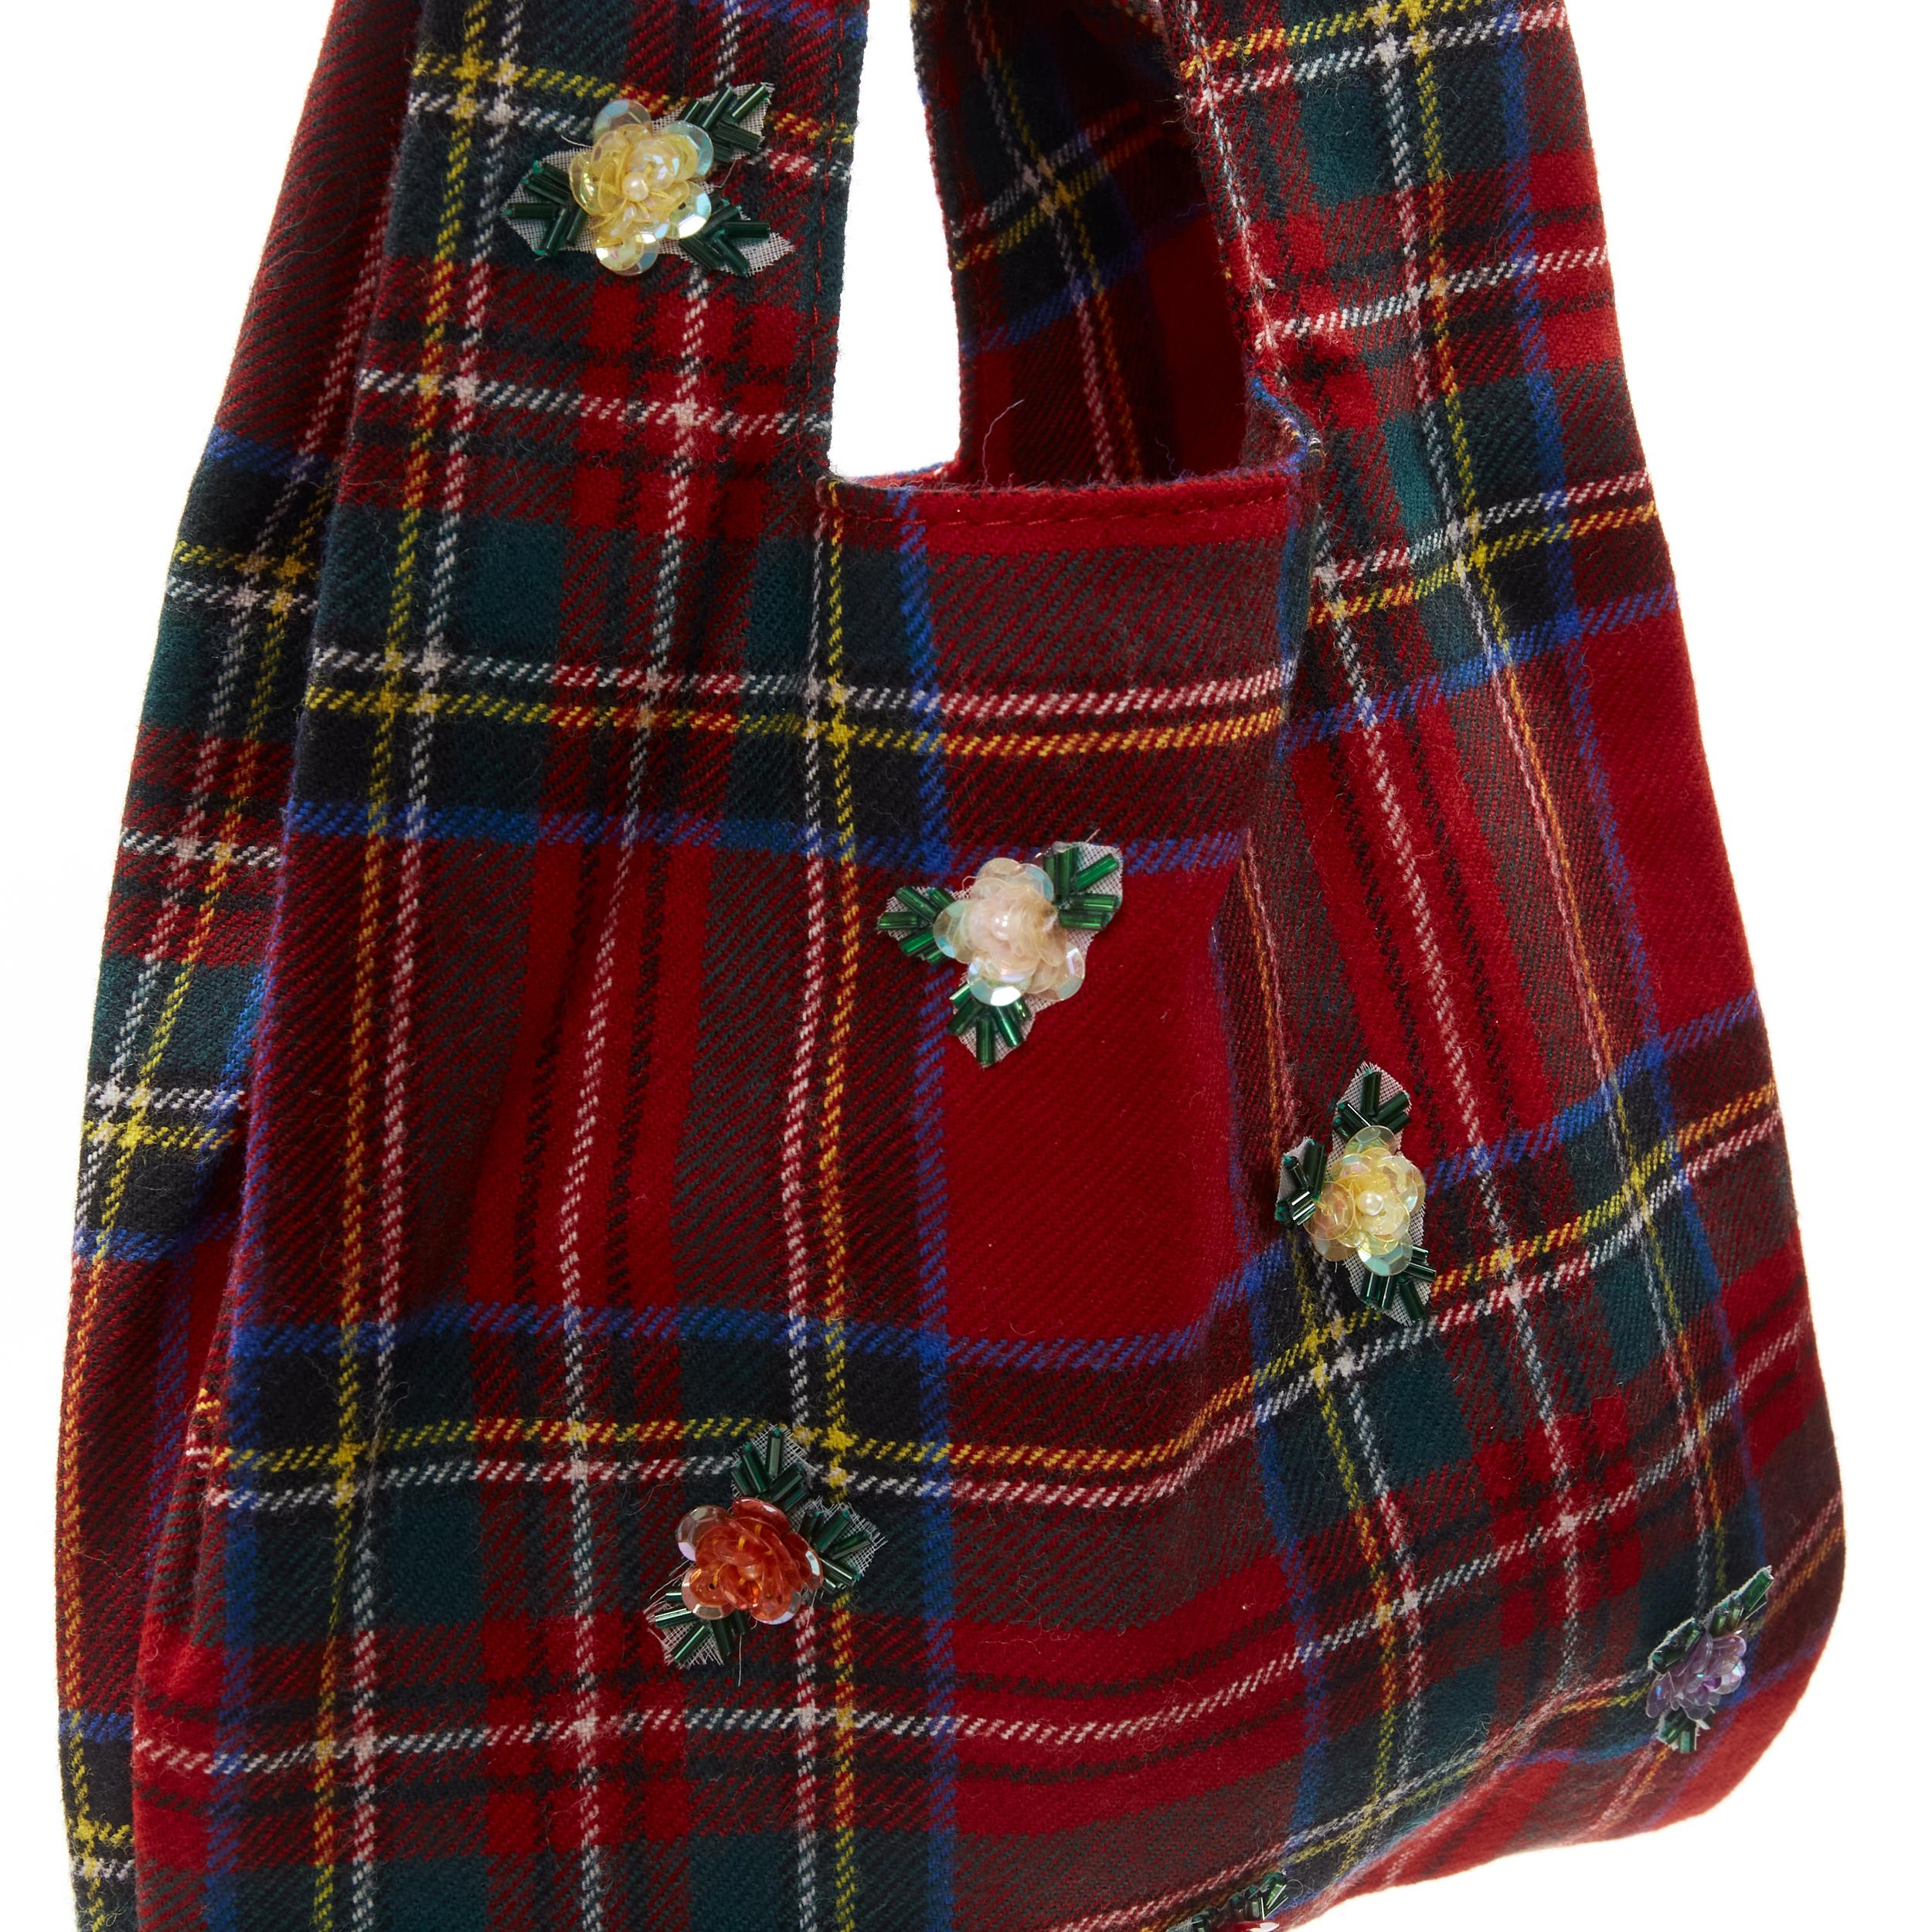 D&G DOLCE GABBANA Vintage red plaid tartan floral bead embellished tote bag 1